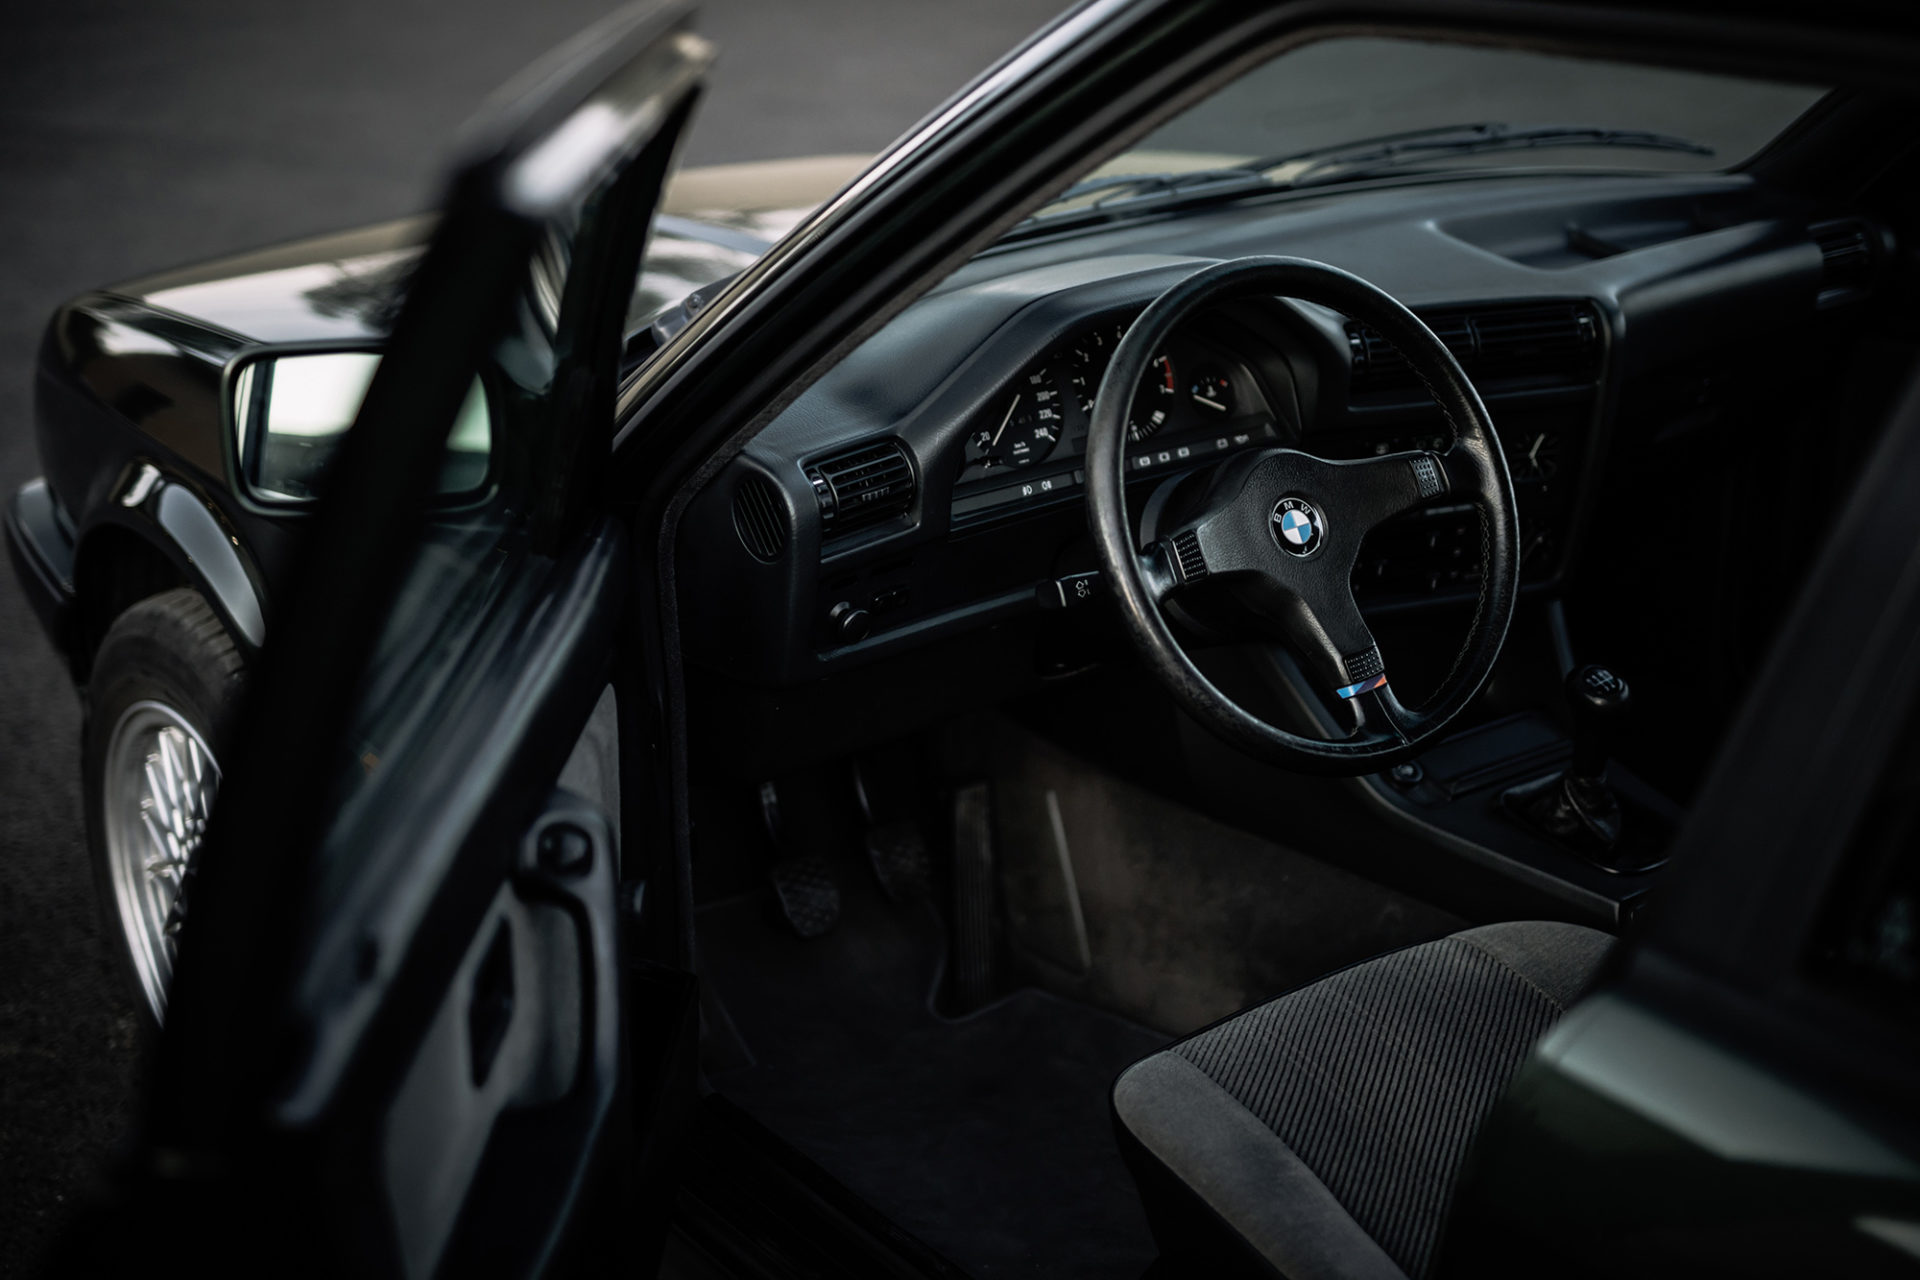 BMW E30 325i Touring - Asphalt Classics